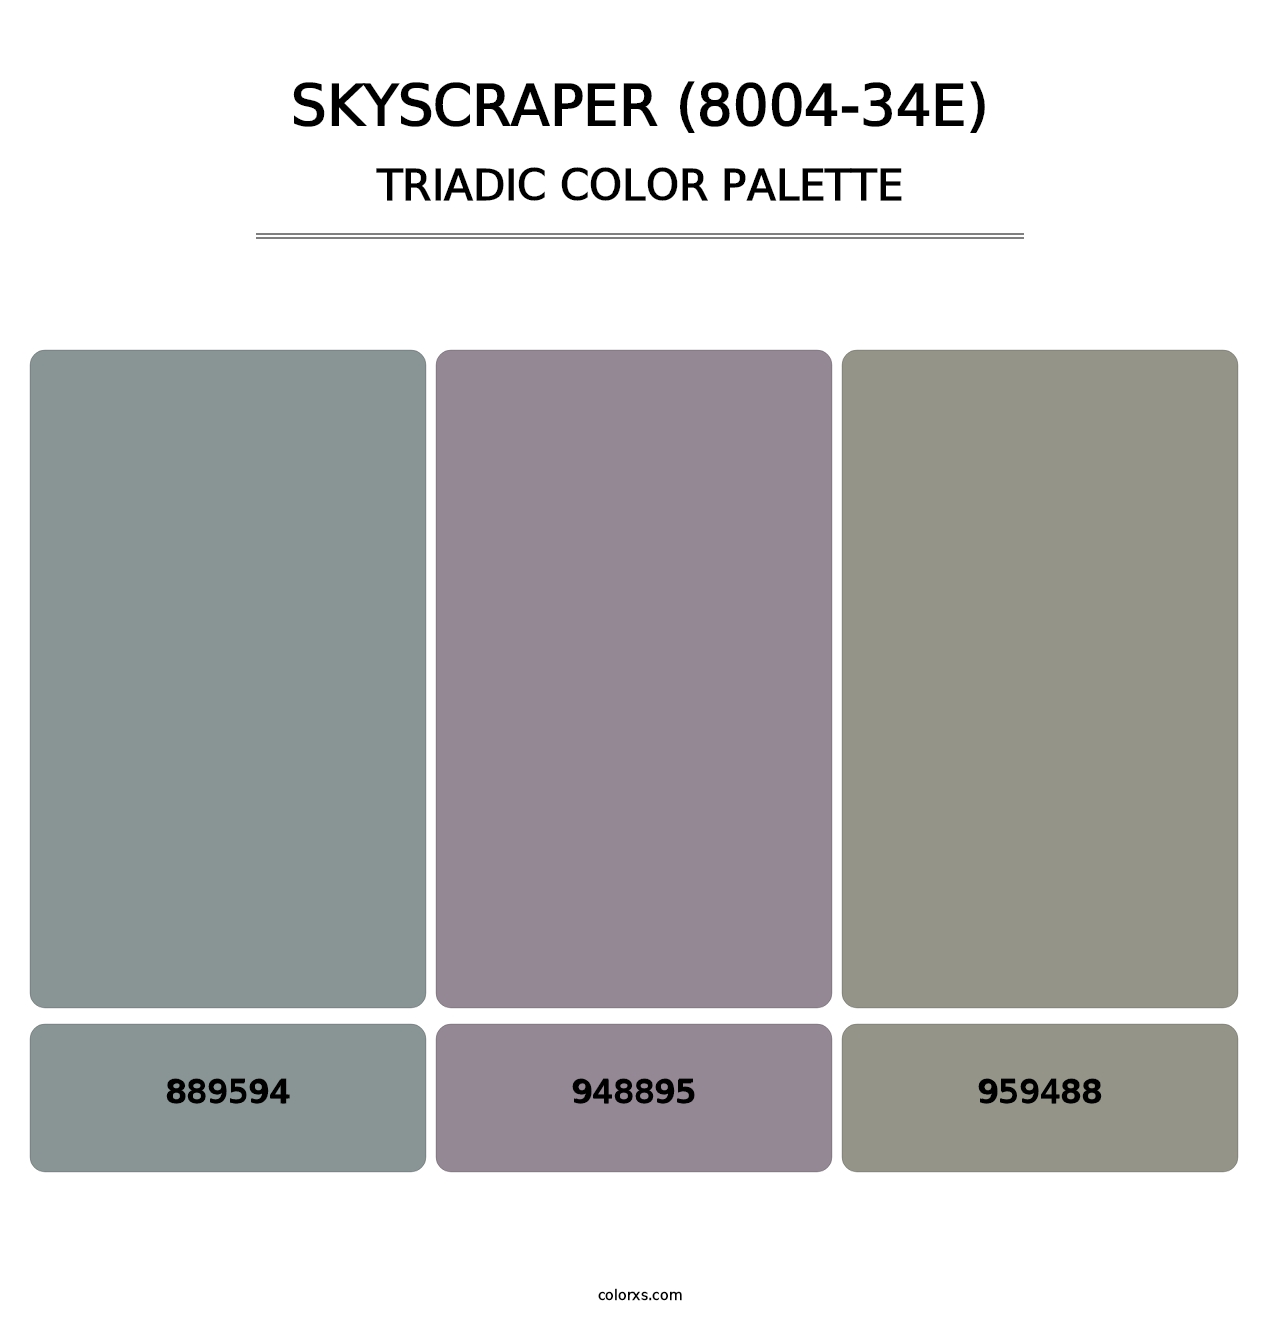 Skyscraper (8004-34E) - Triadic Color Palette